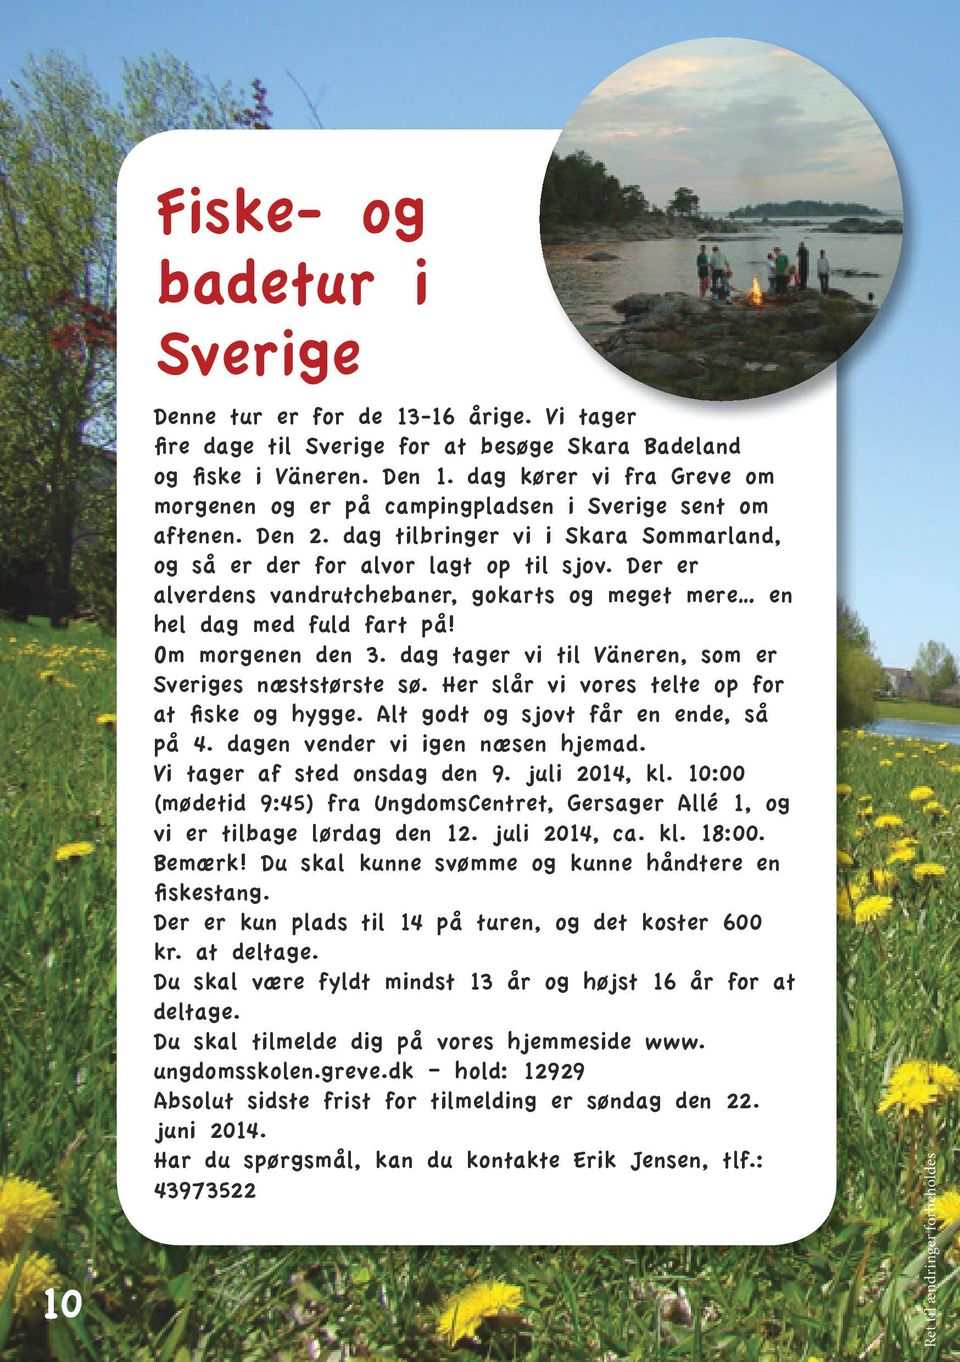 Der er alverdens vandrutchebaner, gokarts og meget mere en hel dag med fuld fart på! Om morgenen den 3. dag tager vi til Väneren, som er Sveriges næststørste sø.